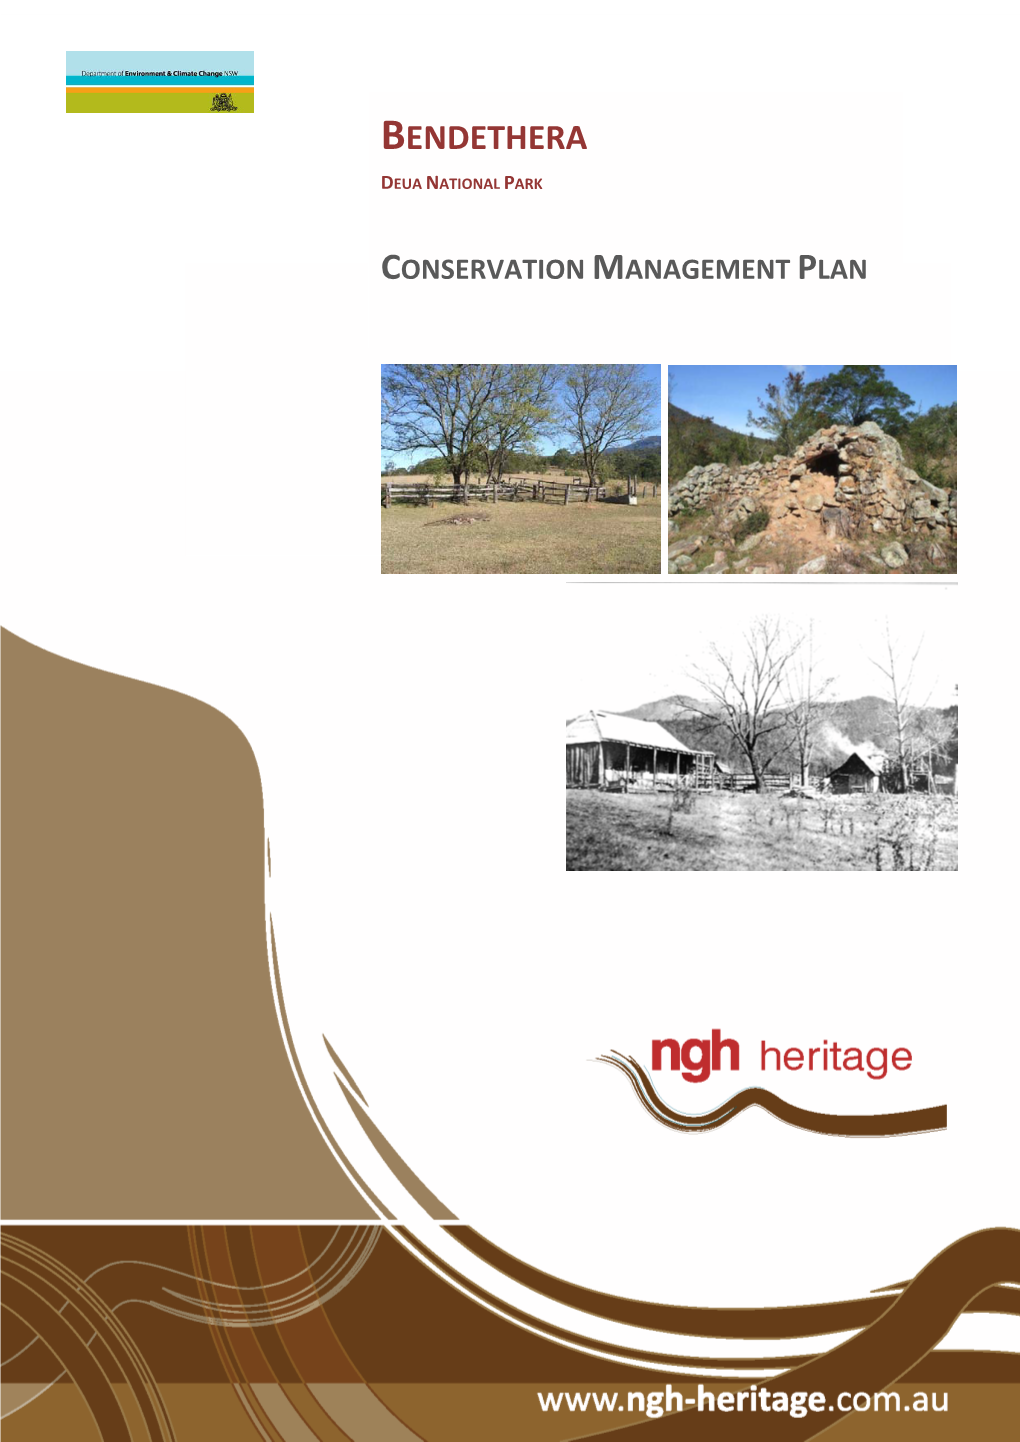 Bendethera Deua National Park Conservation Management Plan